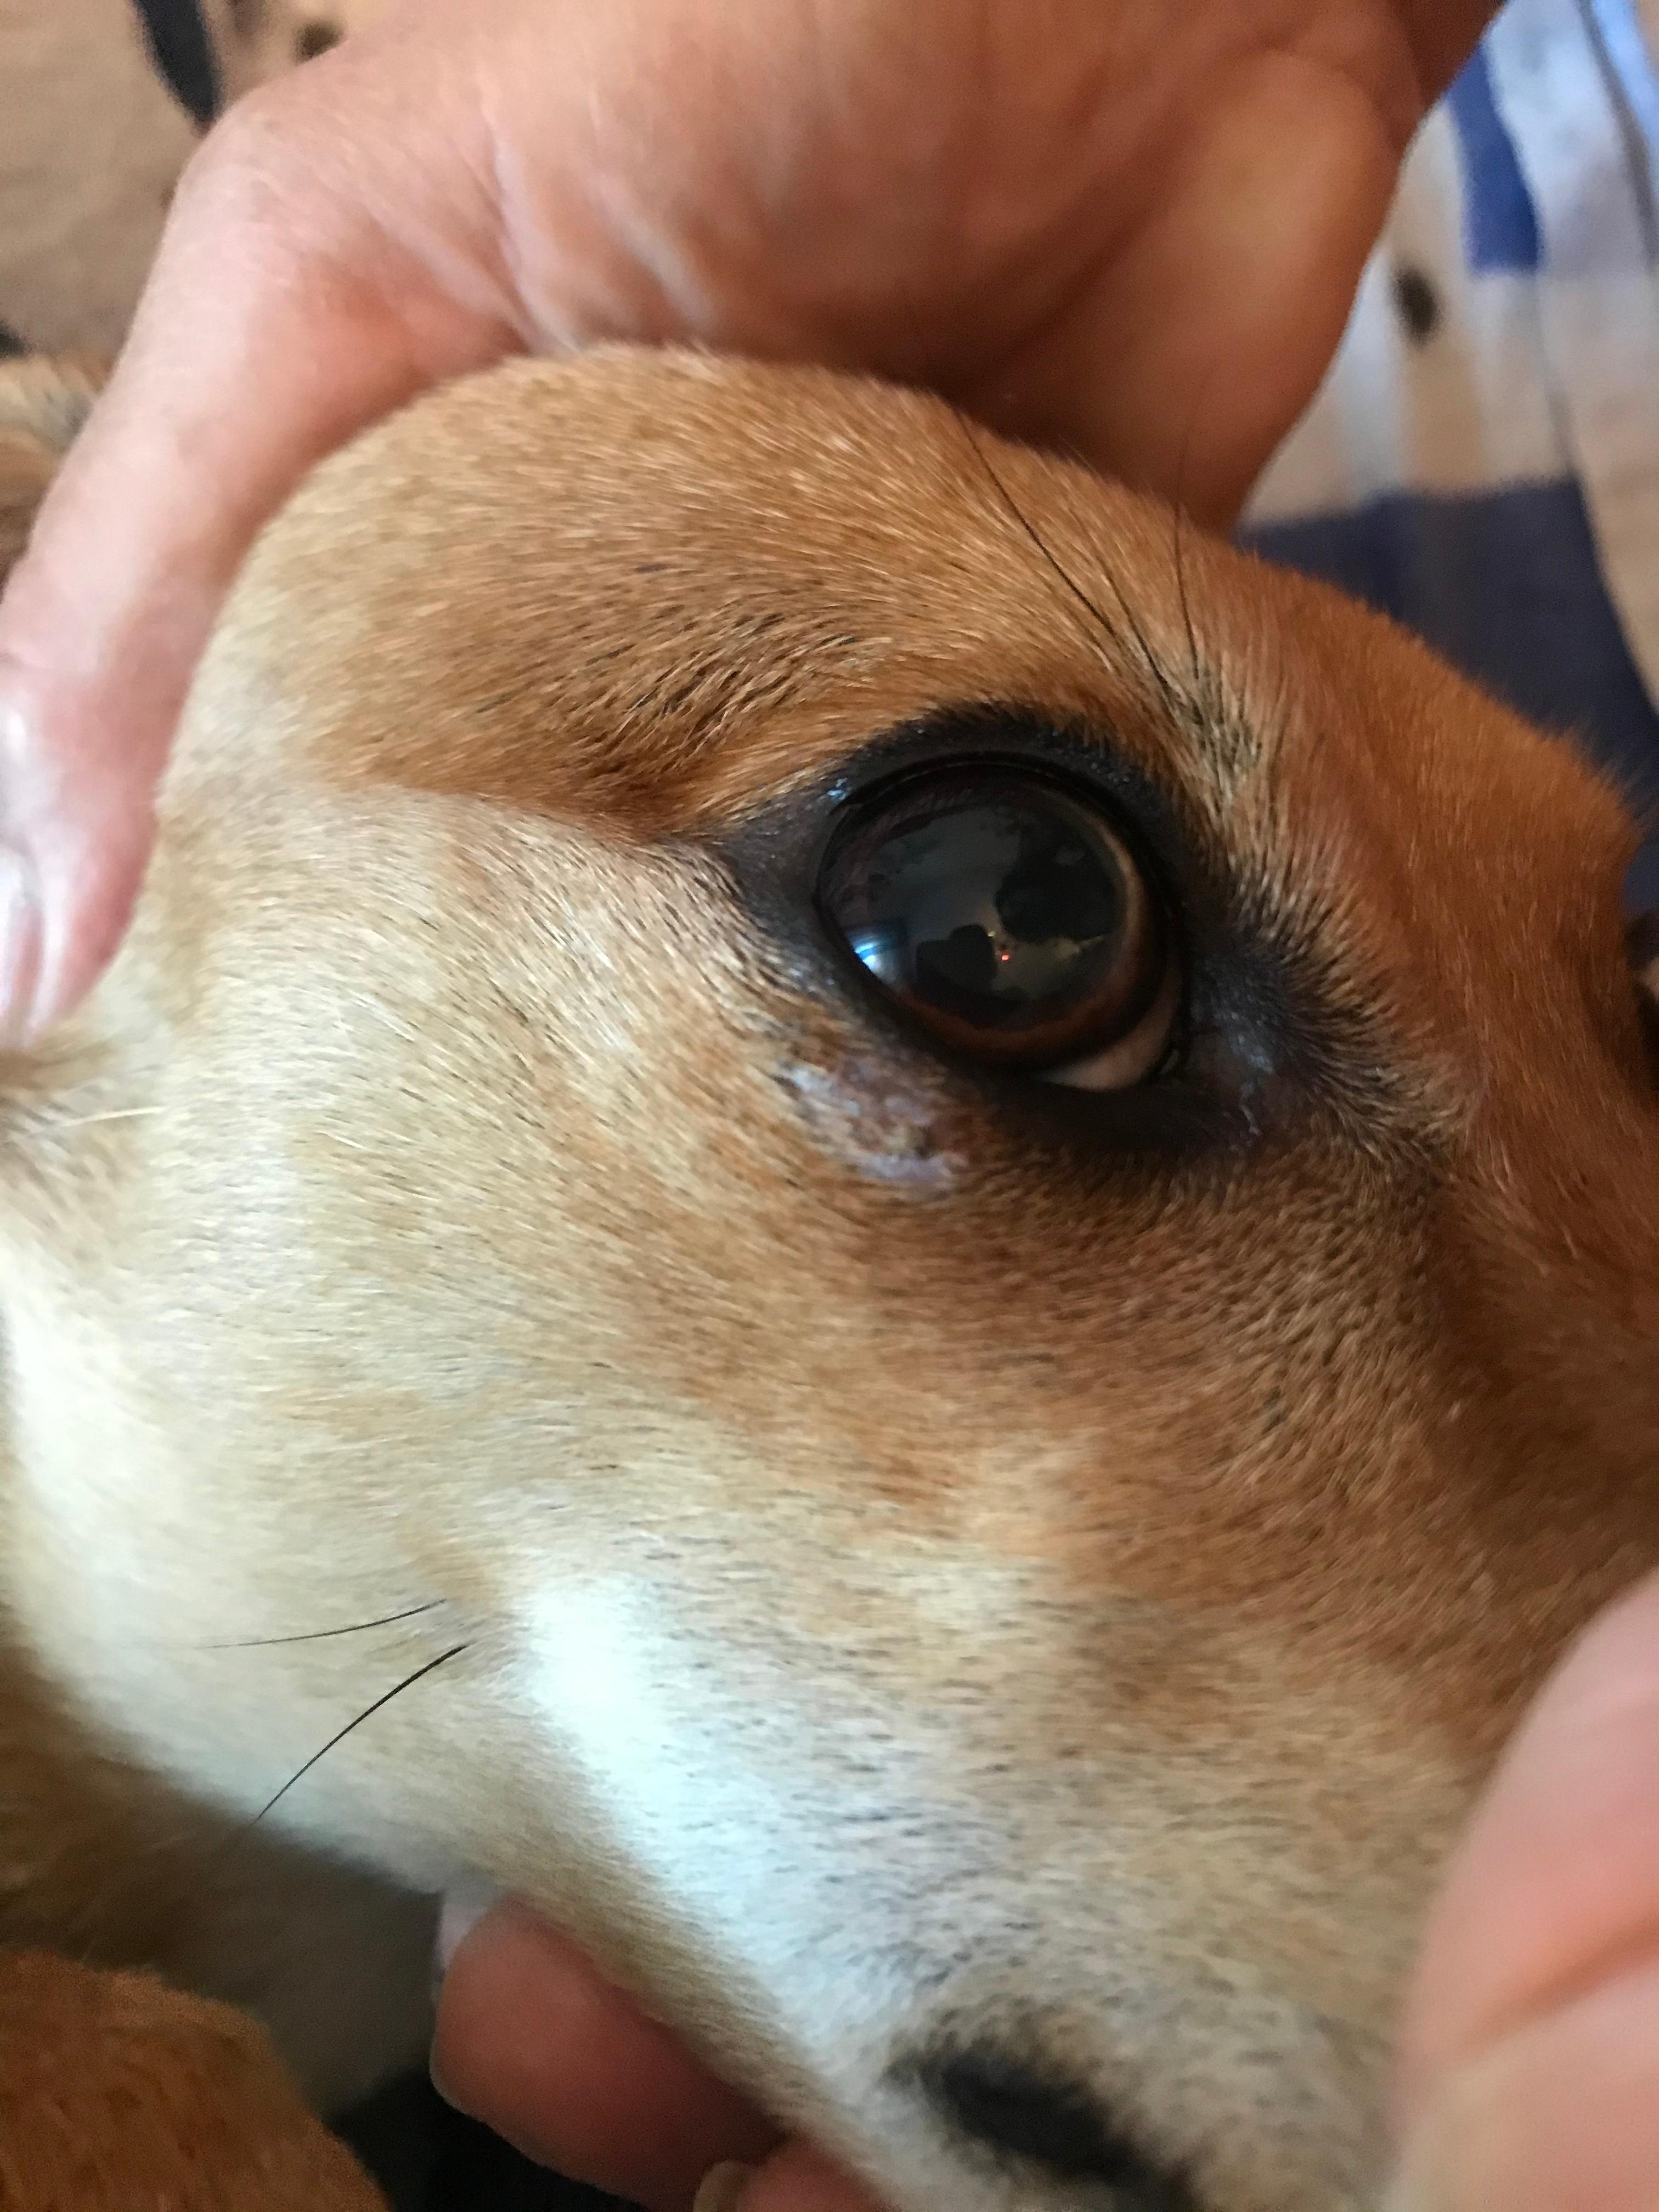 Hund hat was unter dem Auge ich weiß aber nicht was das ist? (Augen, Wunde)